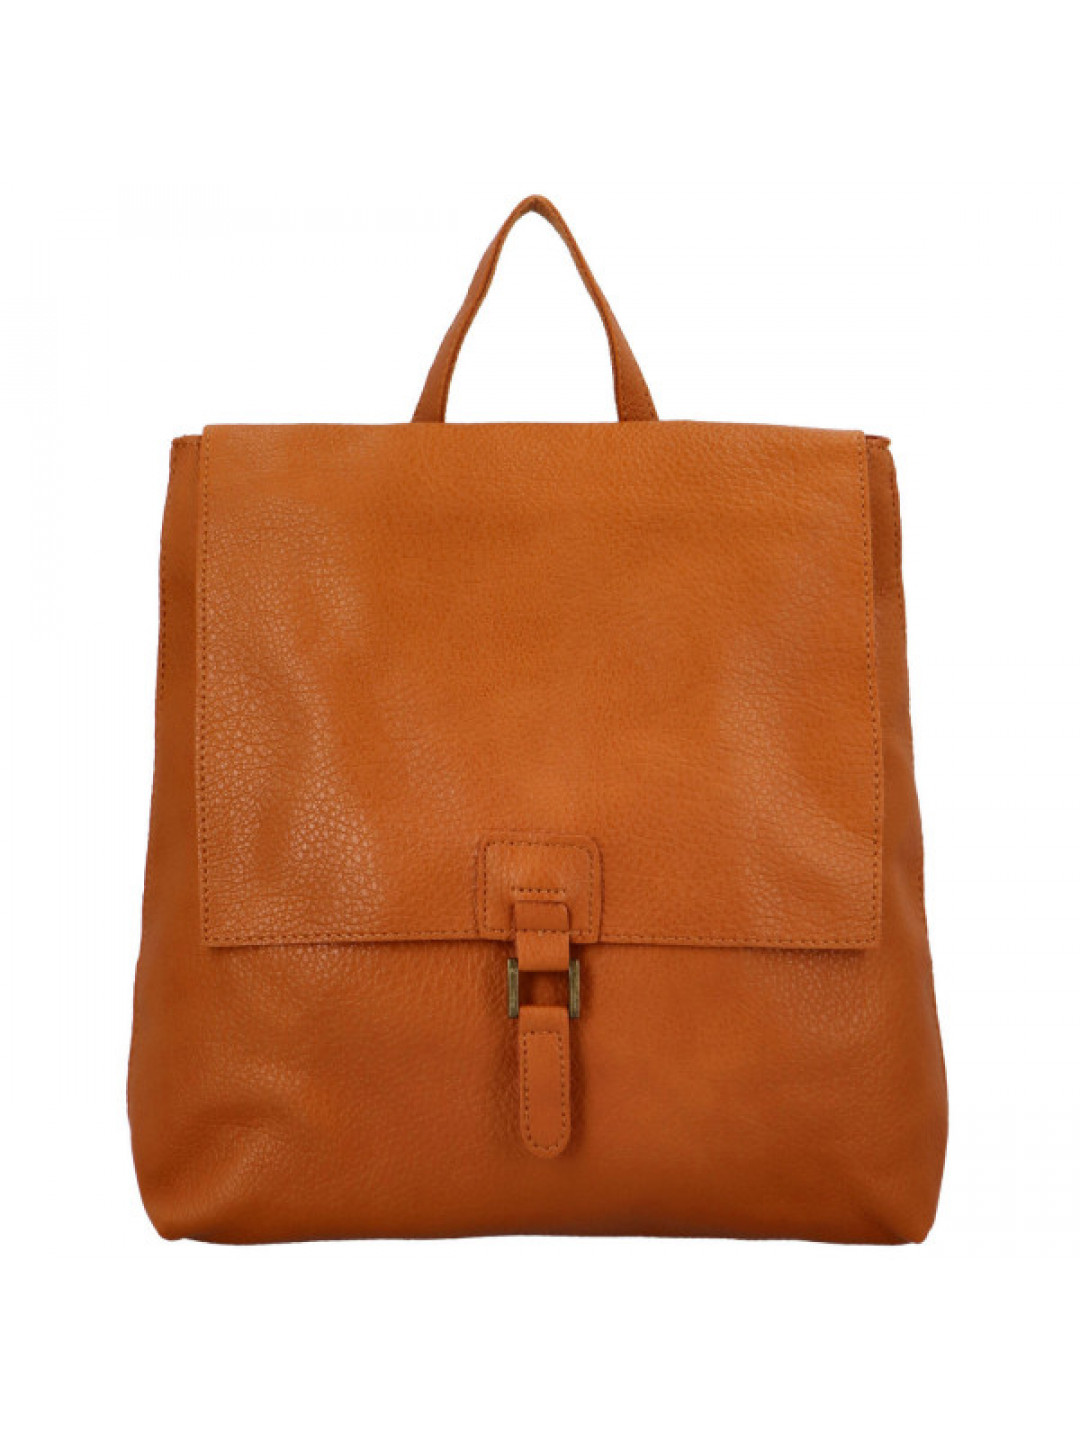 Stylový dámský koženkový kabelko-batoh Octavius hnědý